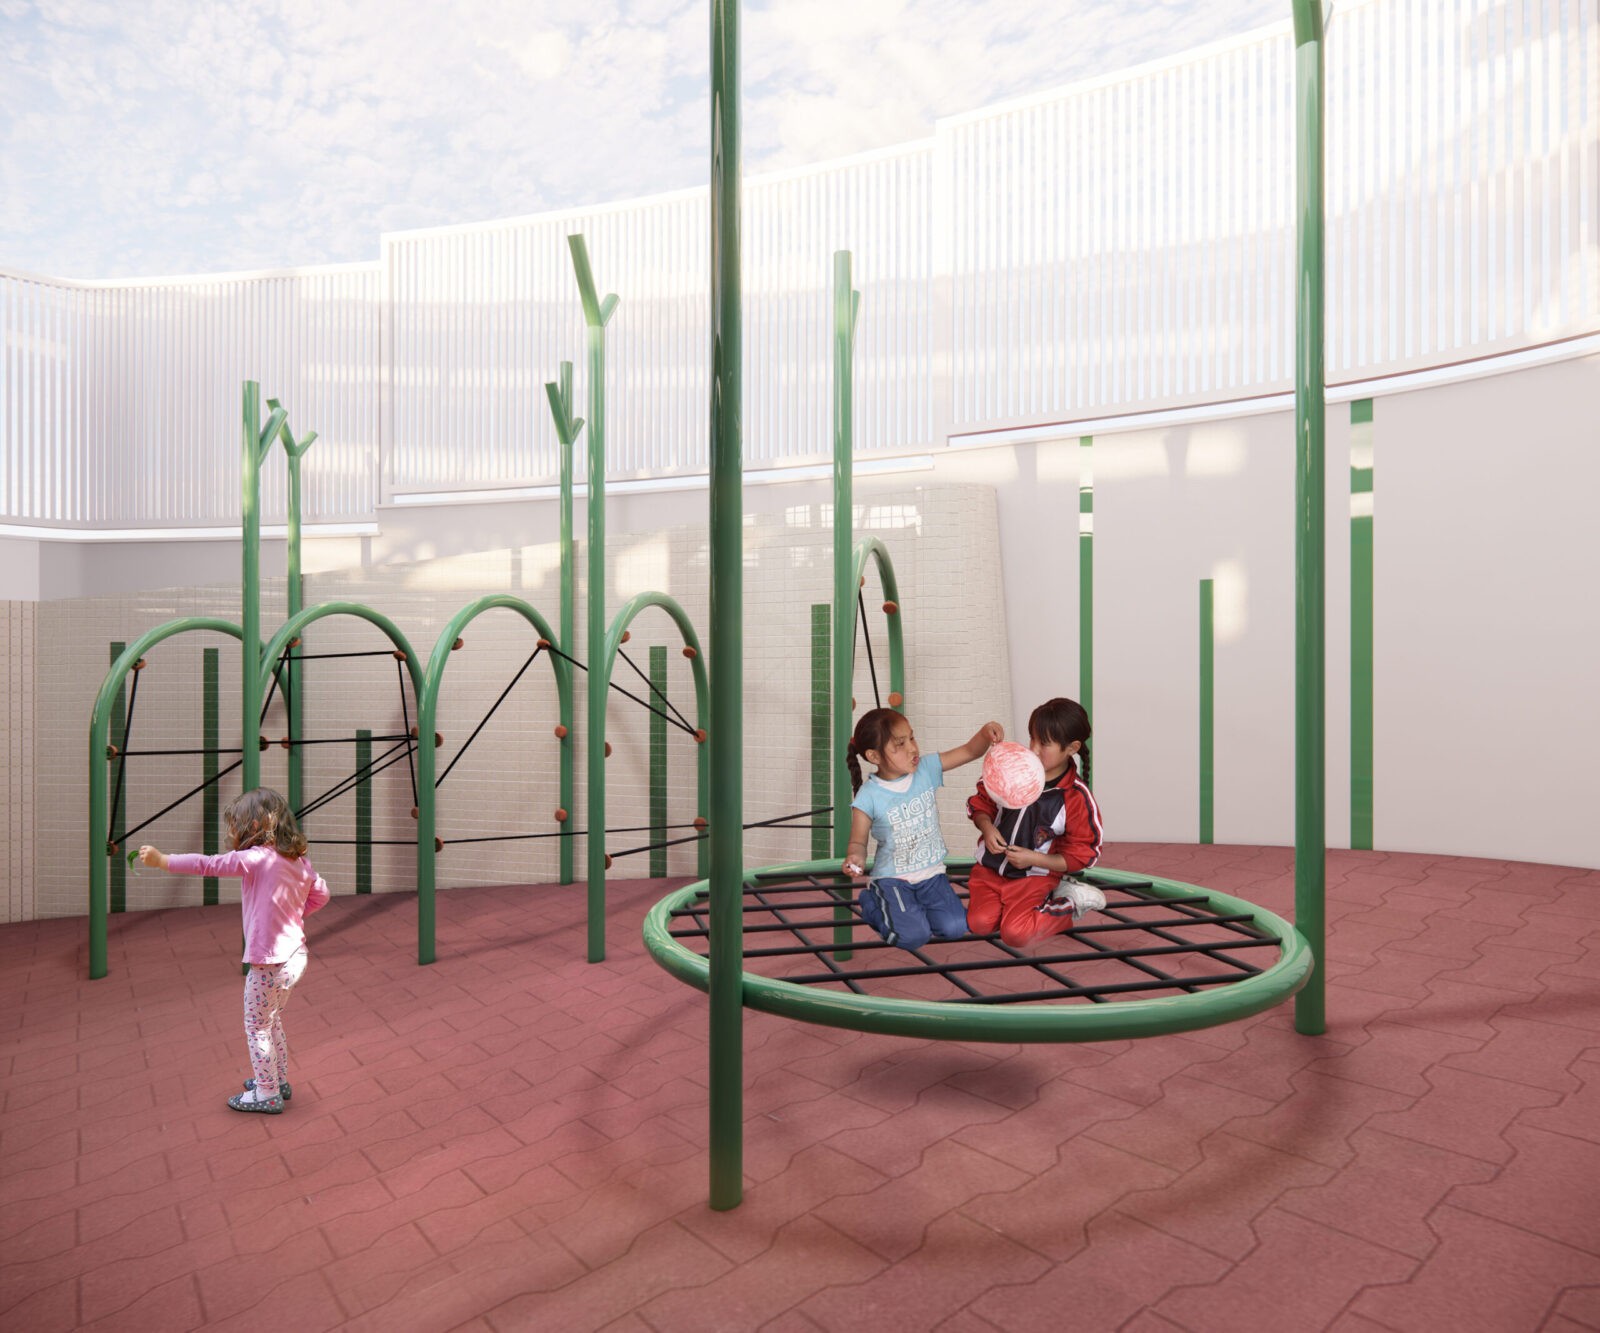 projeto de escola playground infantil arquitetura belo horizonte